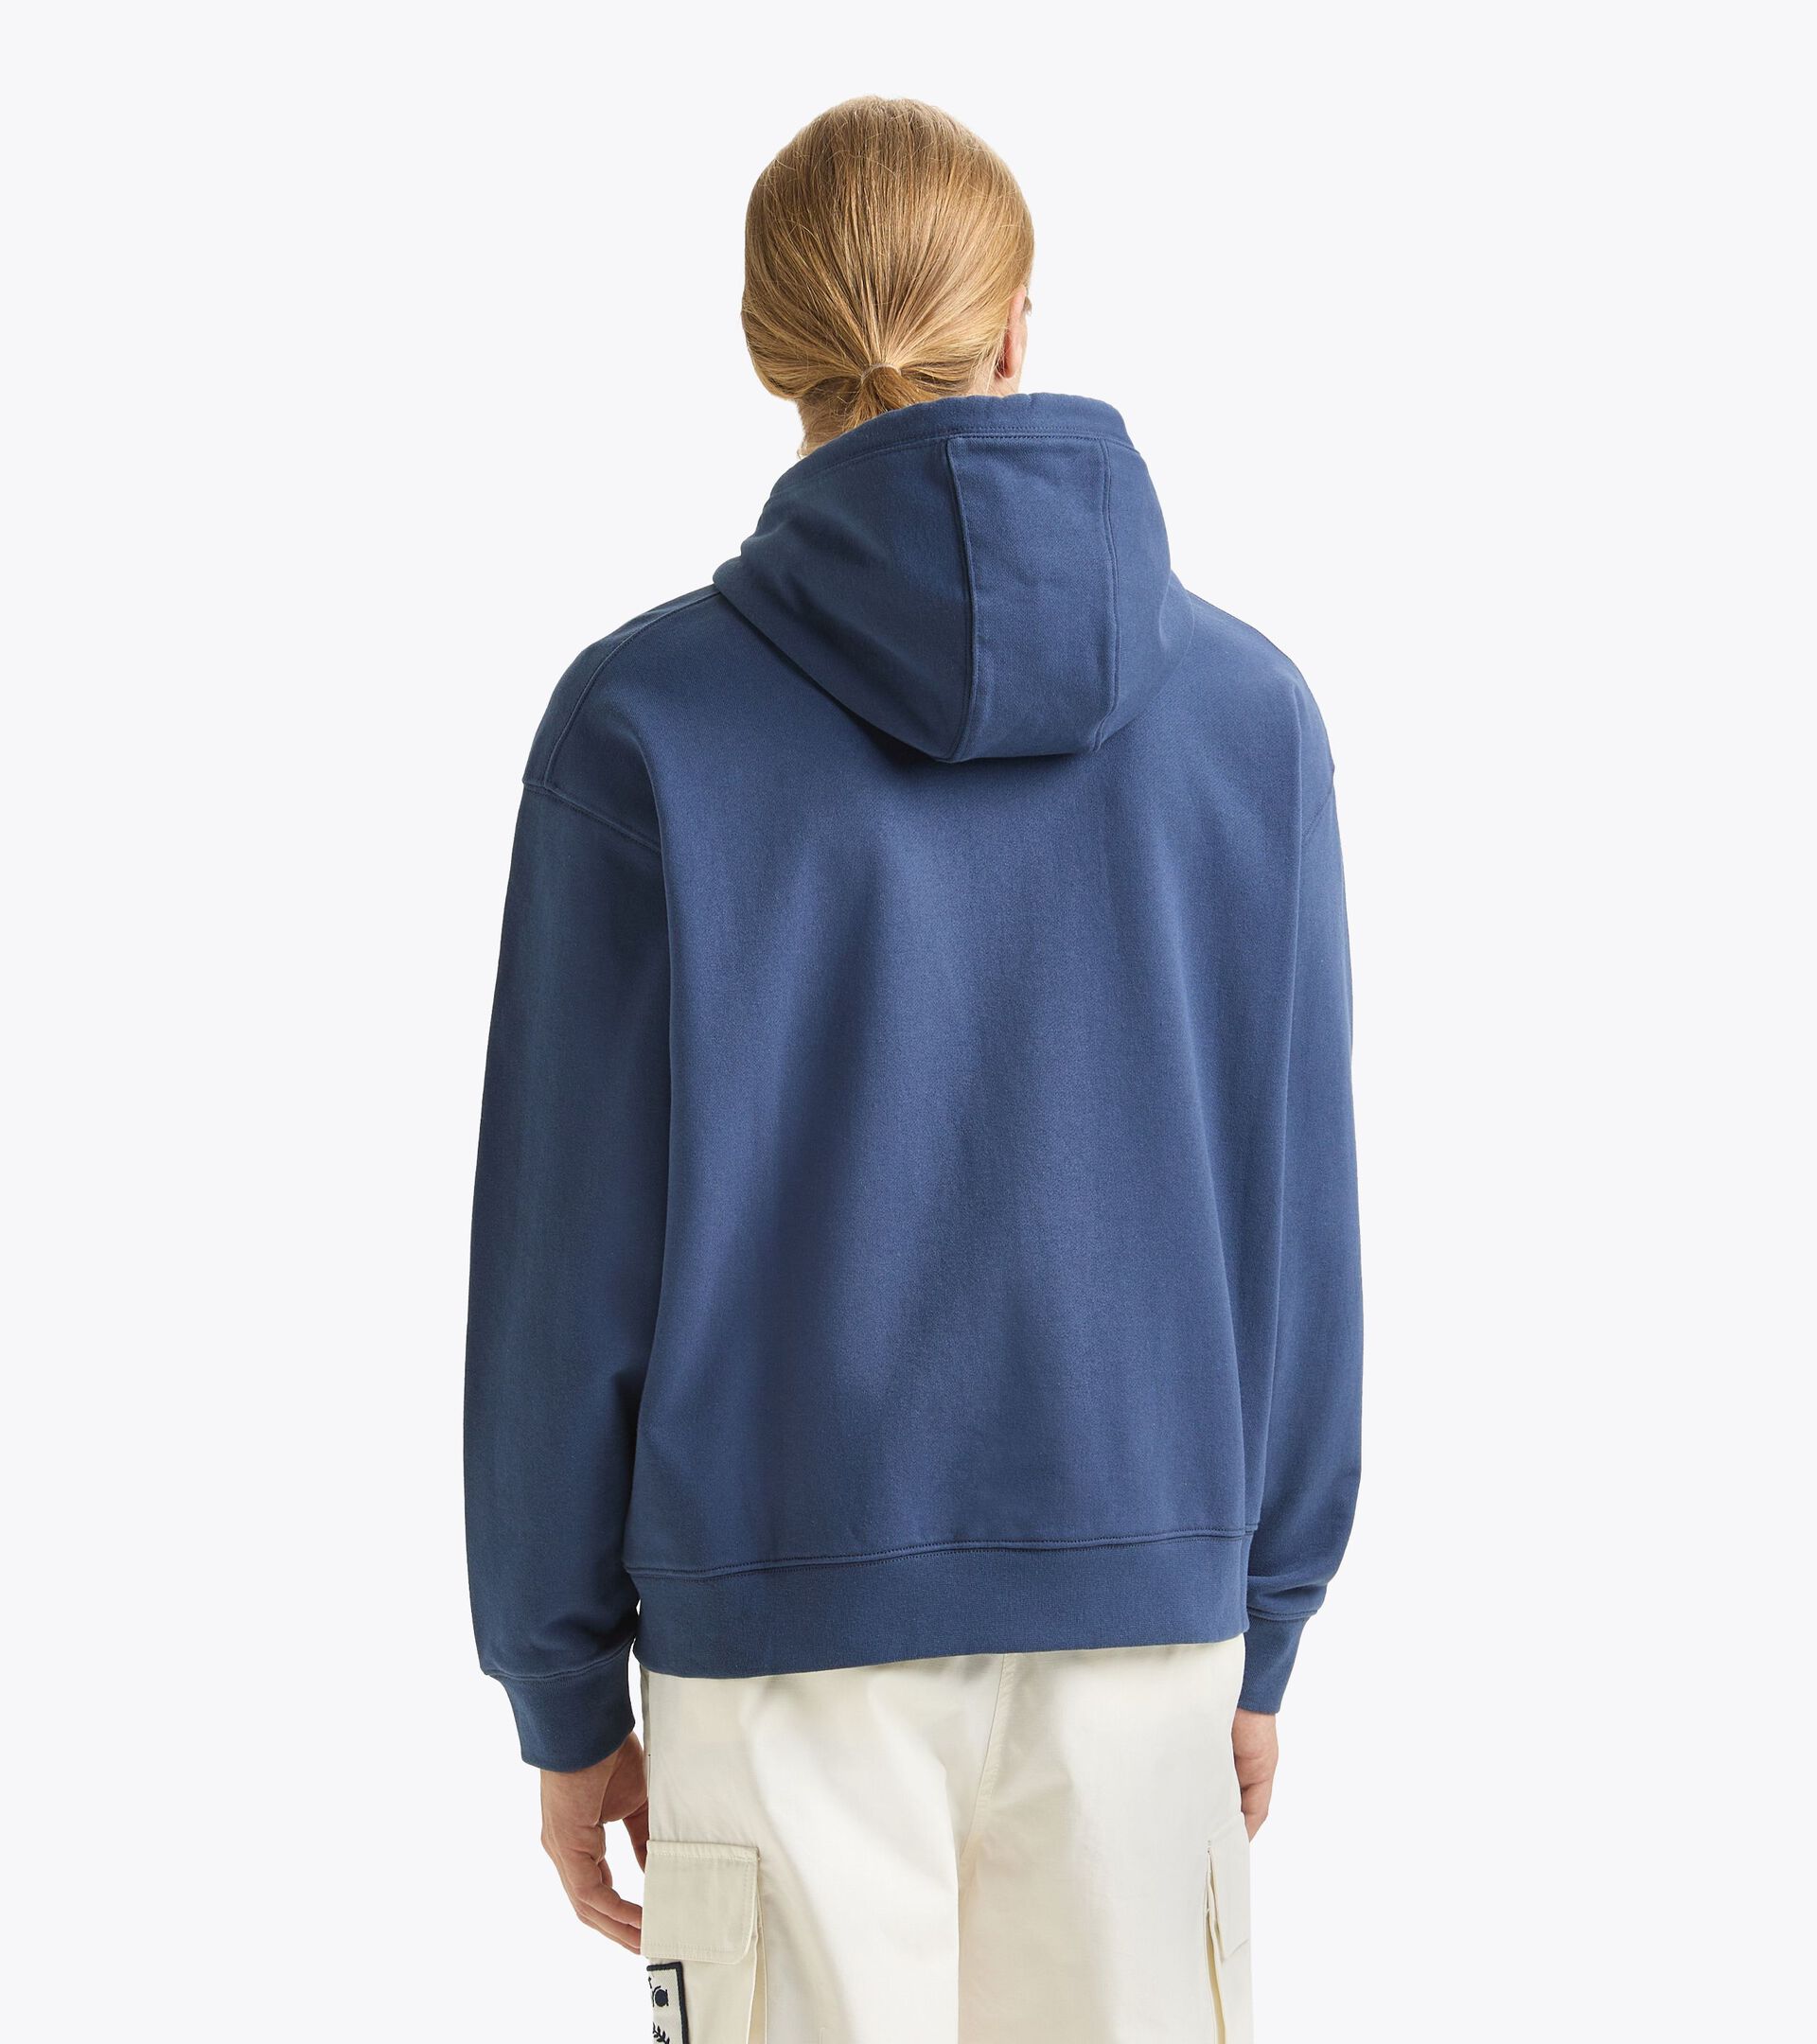 Sportliches Sweatshirt aus recycelter Baumwolle - Made in Italy - Gender Neutral HOODIE FZ LEGACY OCEANA - Diadora